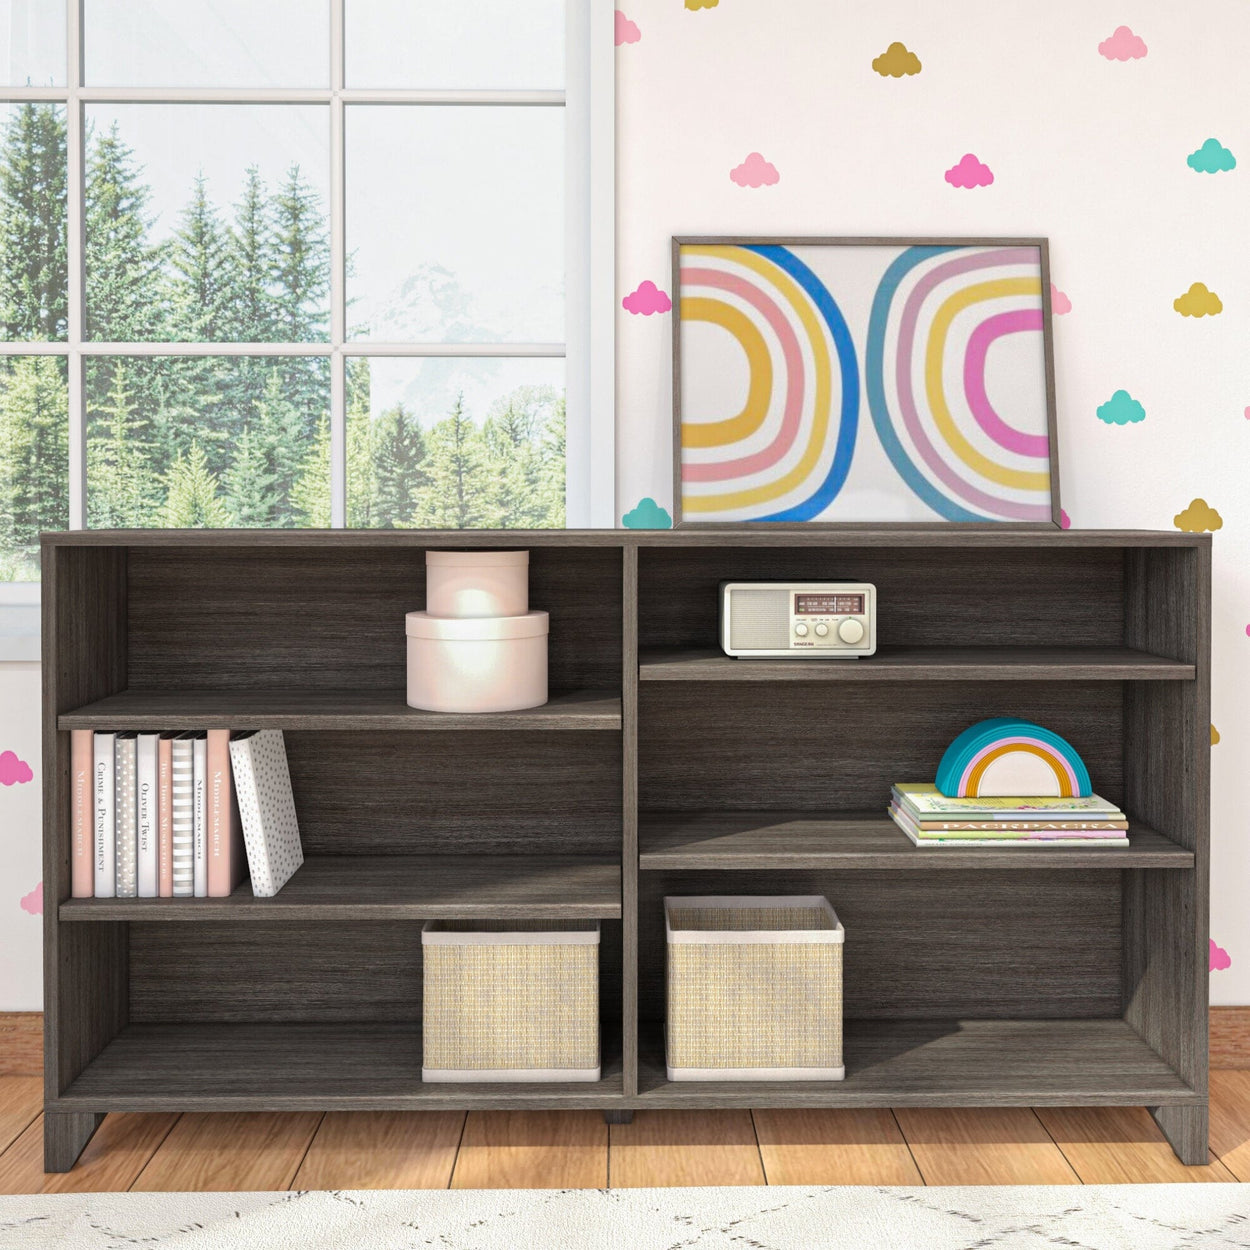 184760-151 : Furniture Classic 6-Shelf Bookcase, Clay